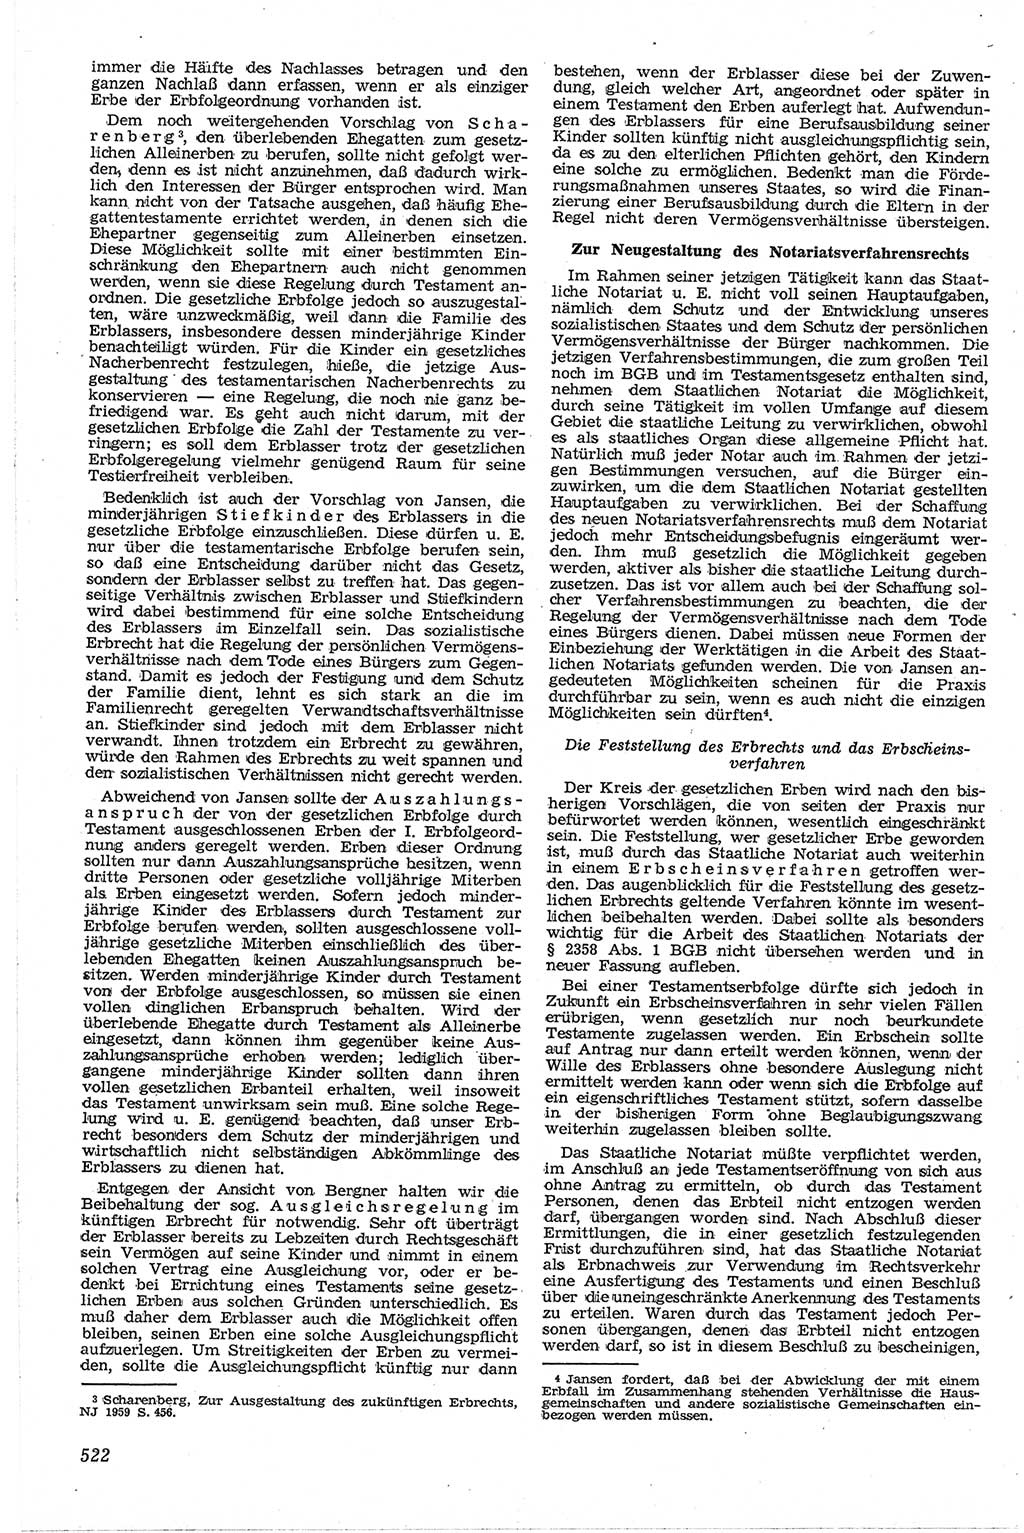 Neue Justiz (NJ), Zeitschrift für Recht und Rechtswissenschaft [Deutsche Demokratische Republik (DDR)], 13. Jahrgang 1959, Seite 522 (NJ DDR 1959, S. 522)